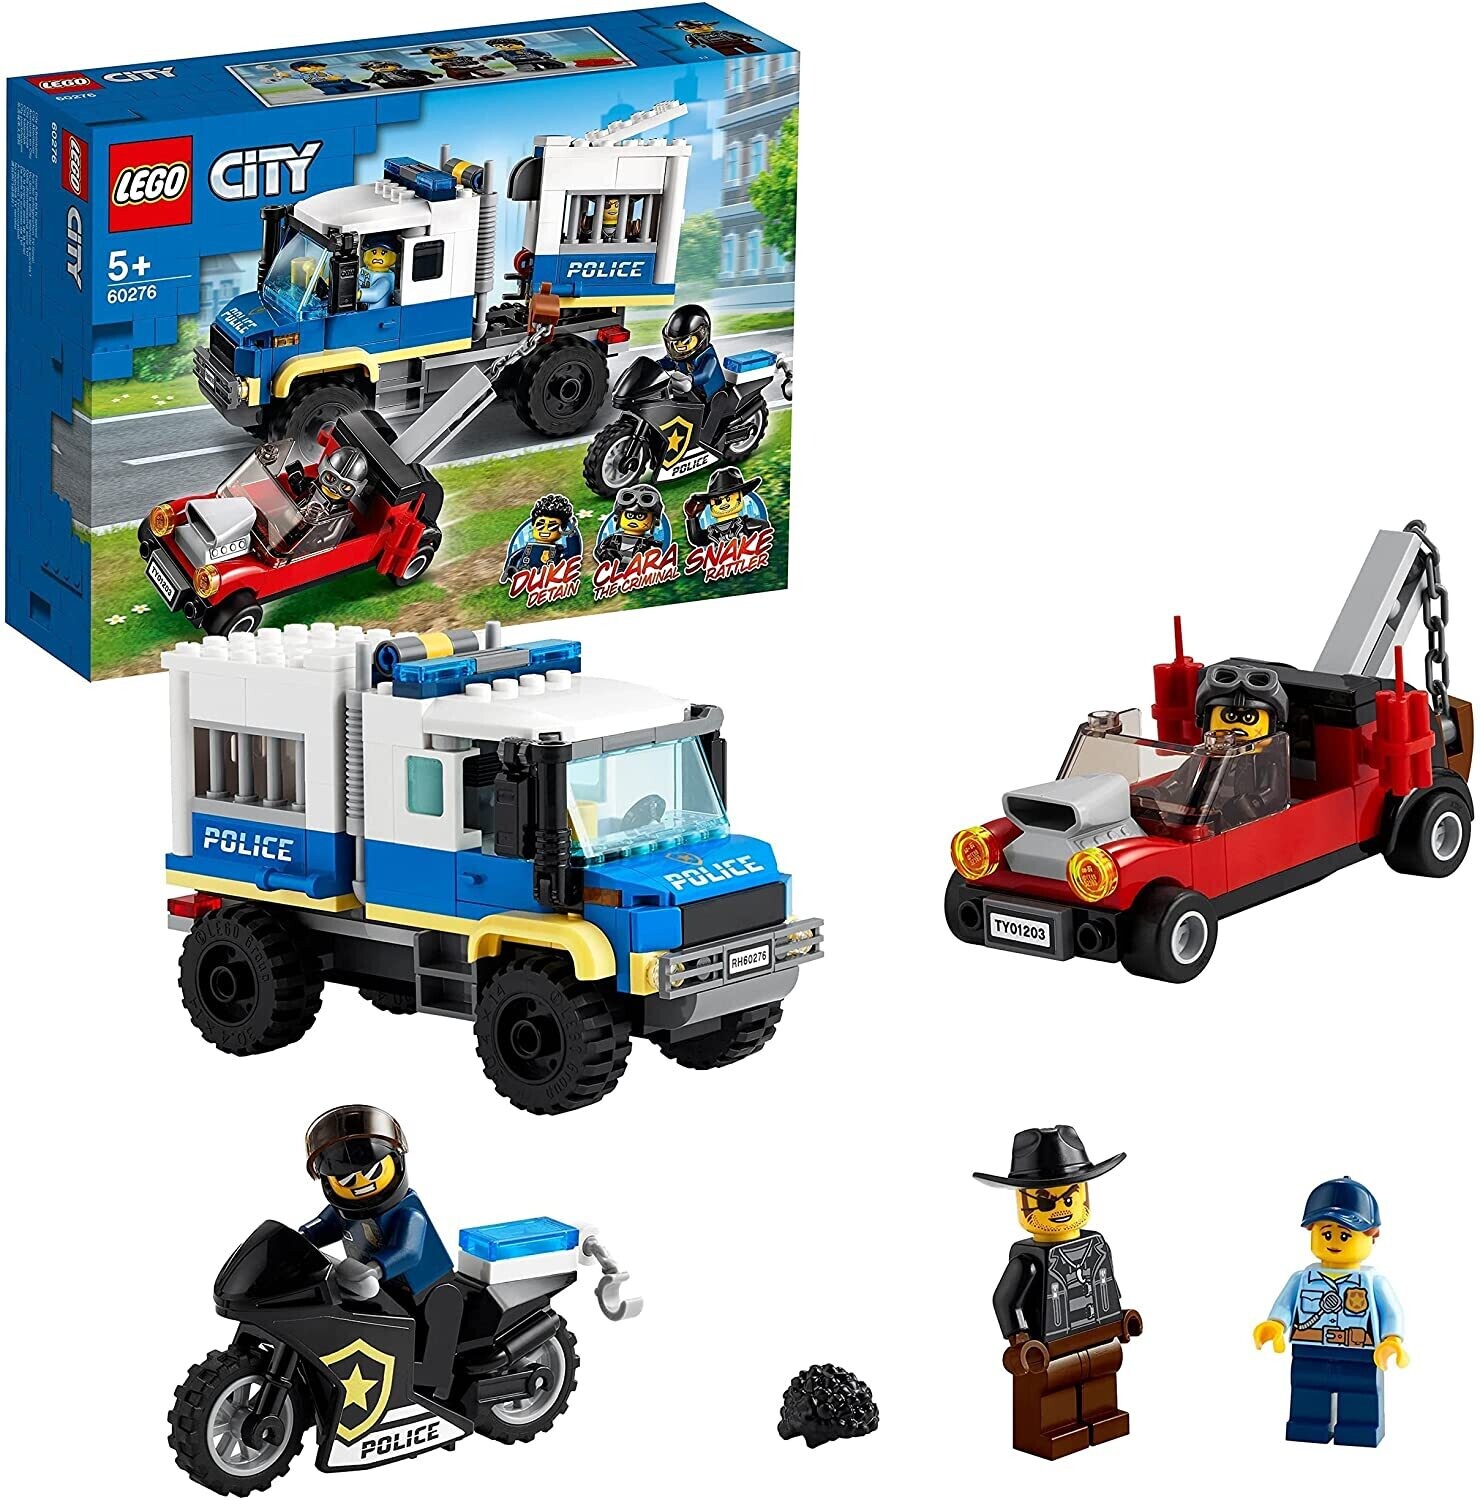 LEGO City Trasporto dei Prigionieri della Polizia, Camion Giocattolo con  Moto, Auto, 4 Minifigure, Snake Rattler e Clara La Criminale, 60276